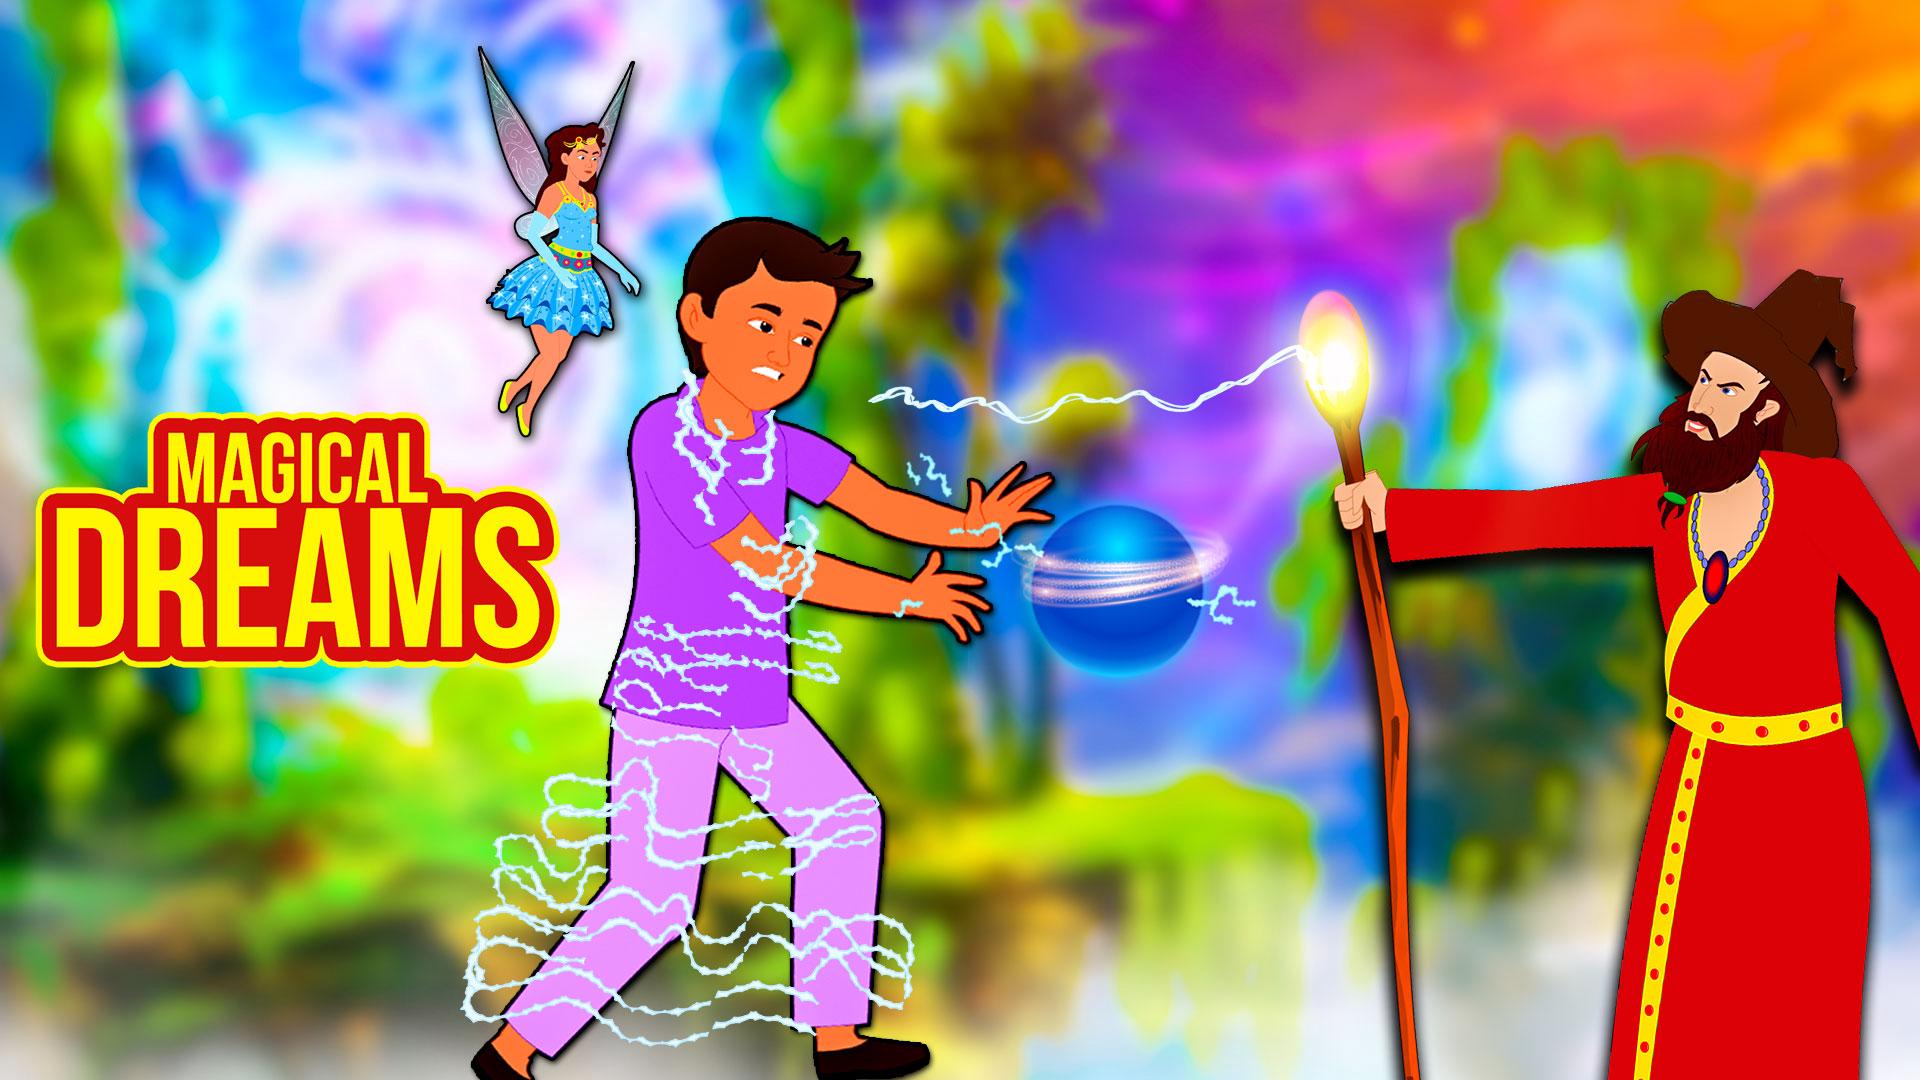 Watch Magical Dreams Telugu Kids Movie Online in 2021